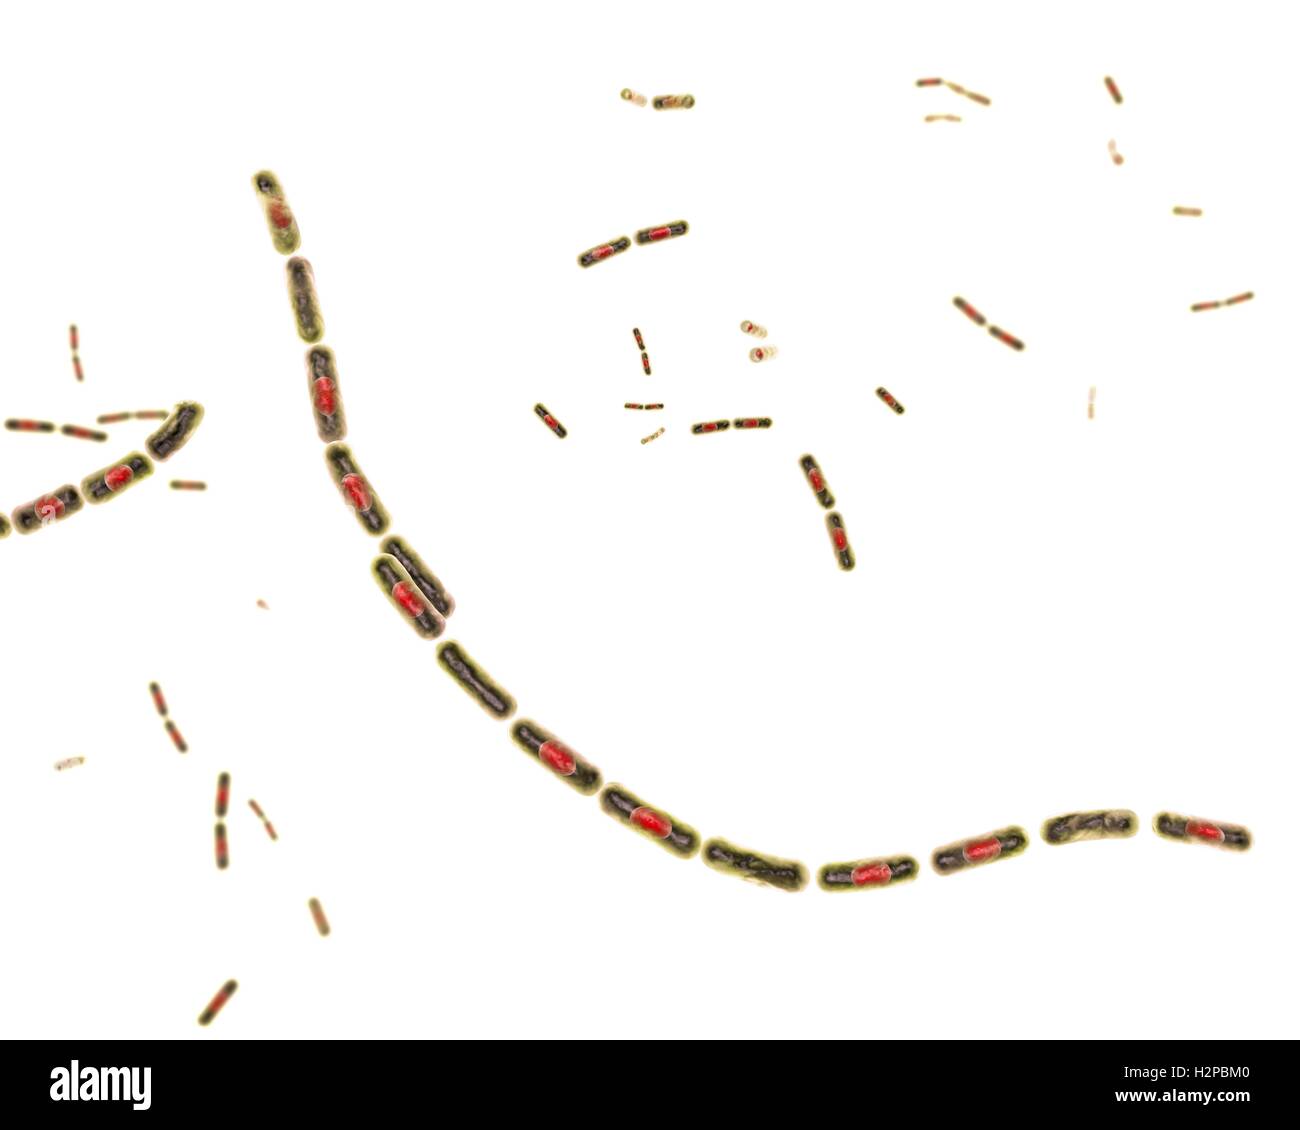 Milzbrandbakterien, Computer Bild. Anthrax-Bakterien (Bacillus Anthracis) sind die Ursache für die Krankheit Milzbrand bei Mensch und Vieh. Sie sind grampositive Spore-produzierenden Bakterien, die in Ketten (Streptobacilli) angeordnet. Viele Zellen haben eine zentrale Spore (rot). Stockfoto